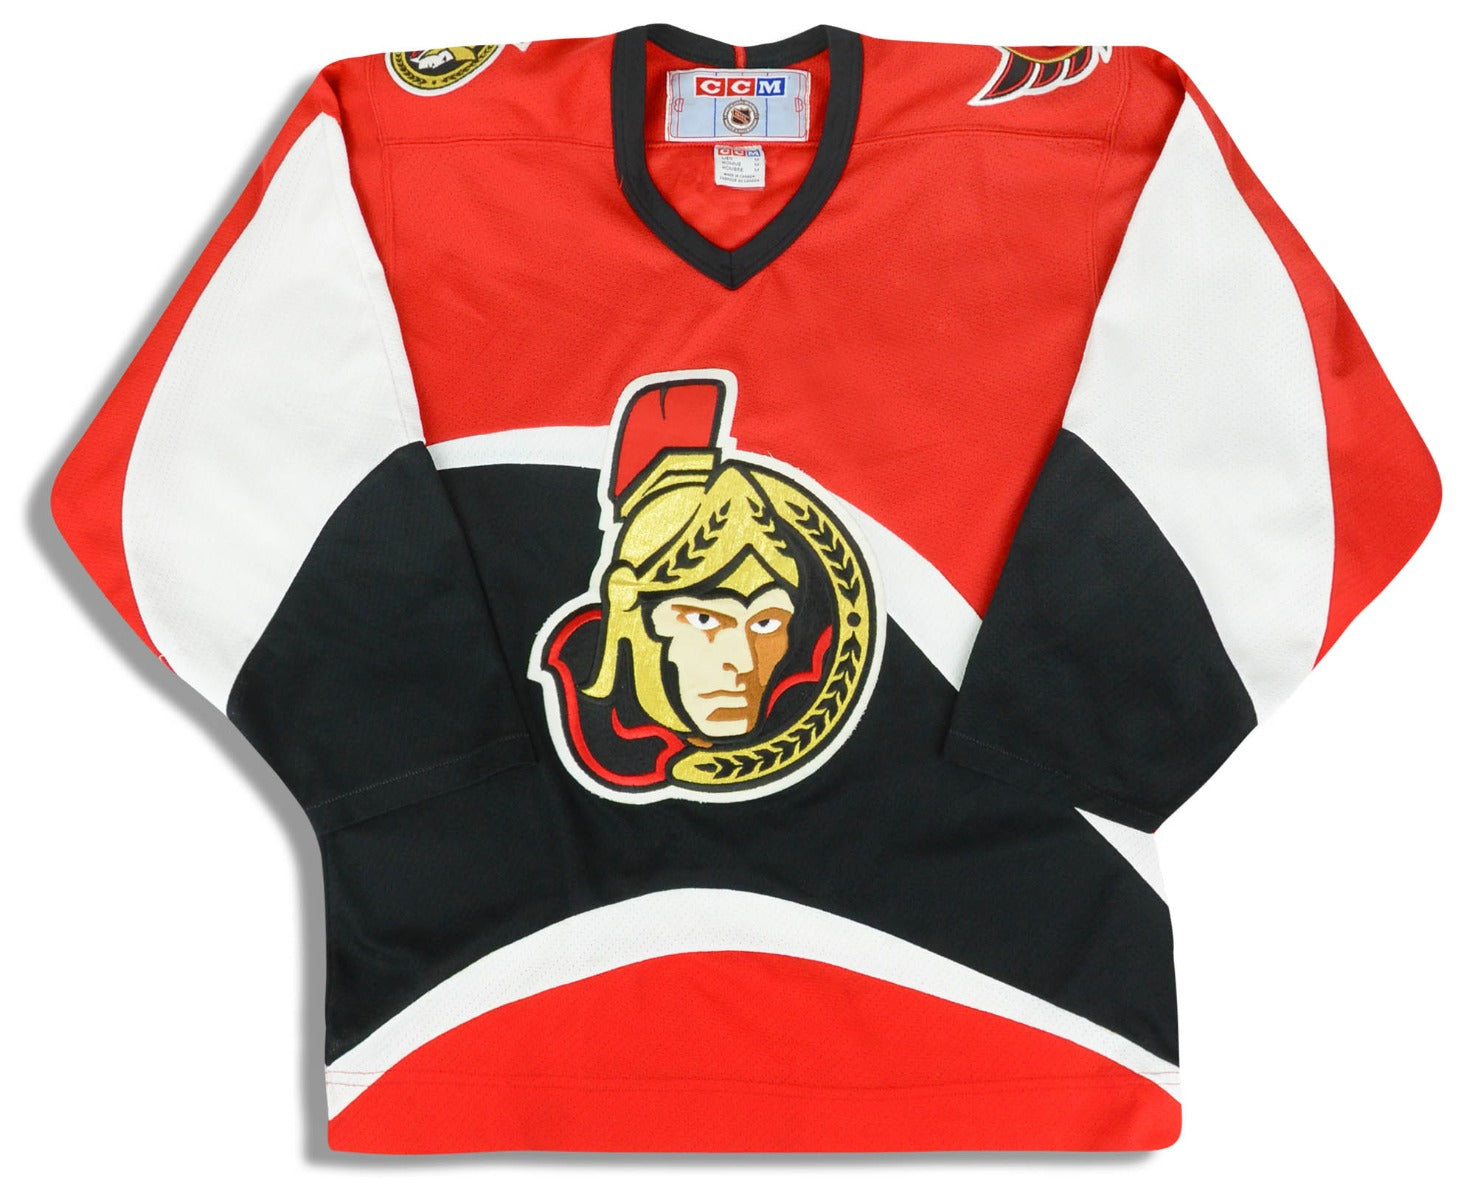 NHL Ottawa Senators Jersey - M